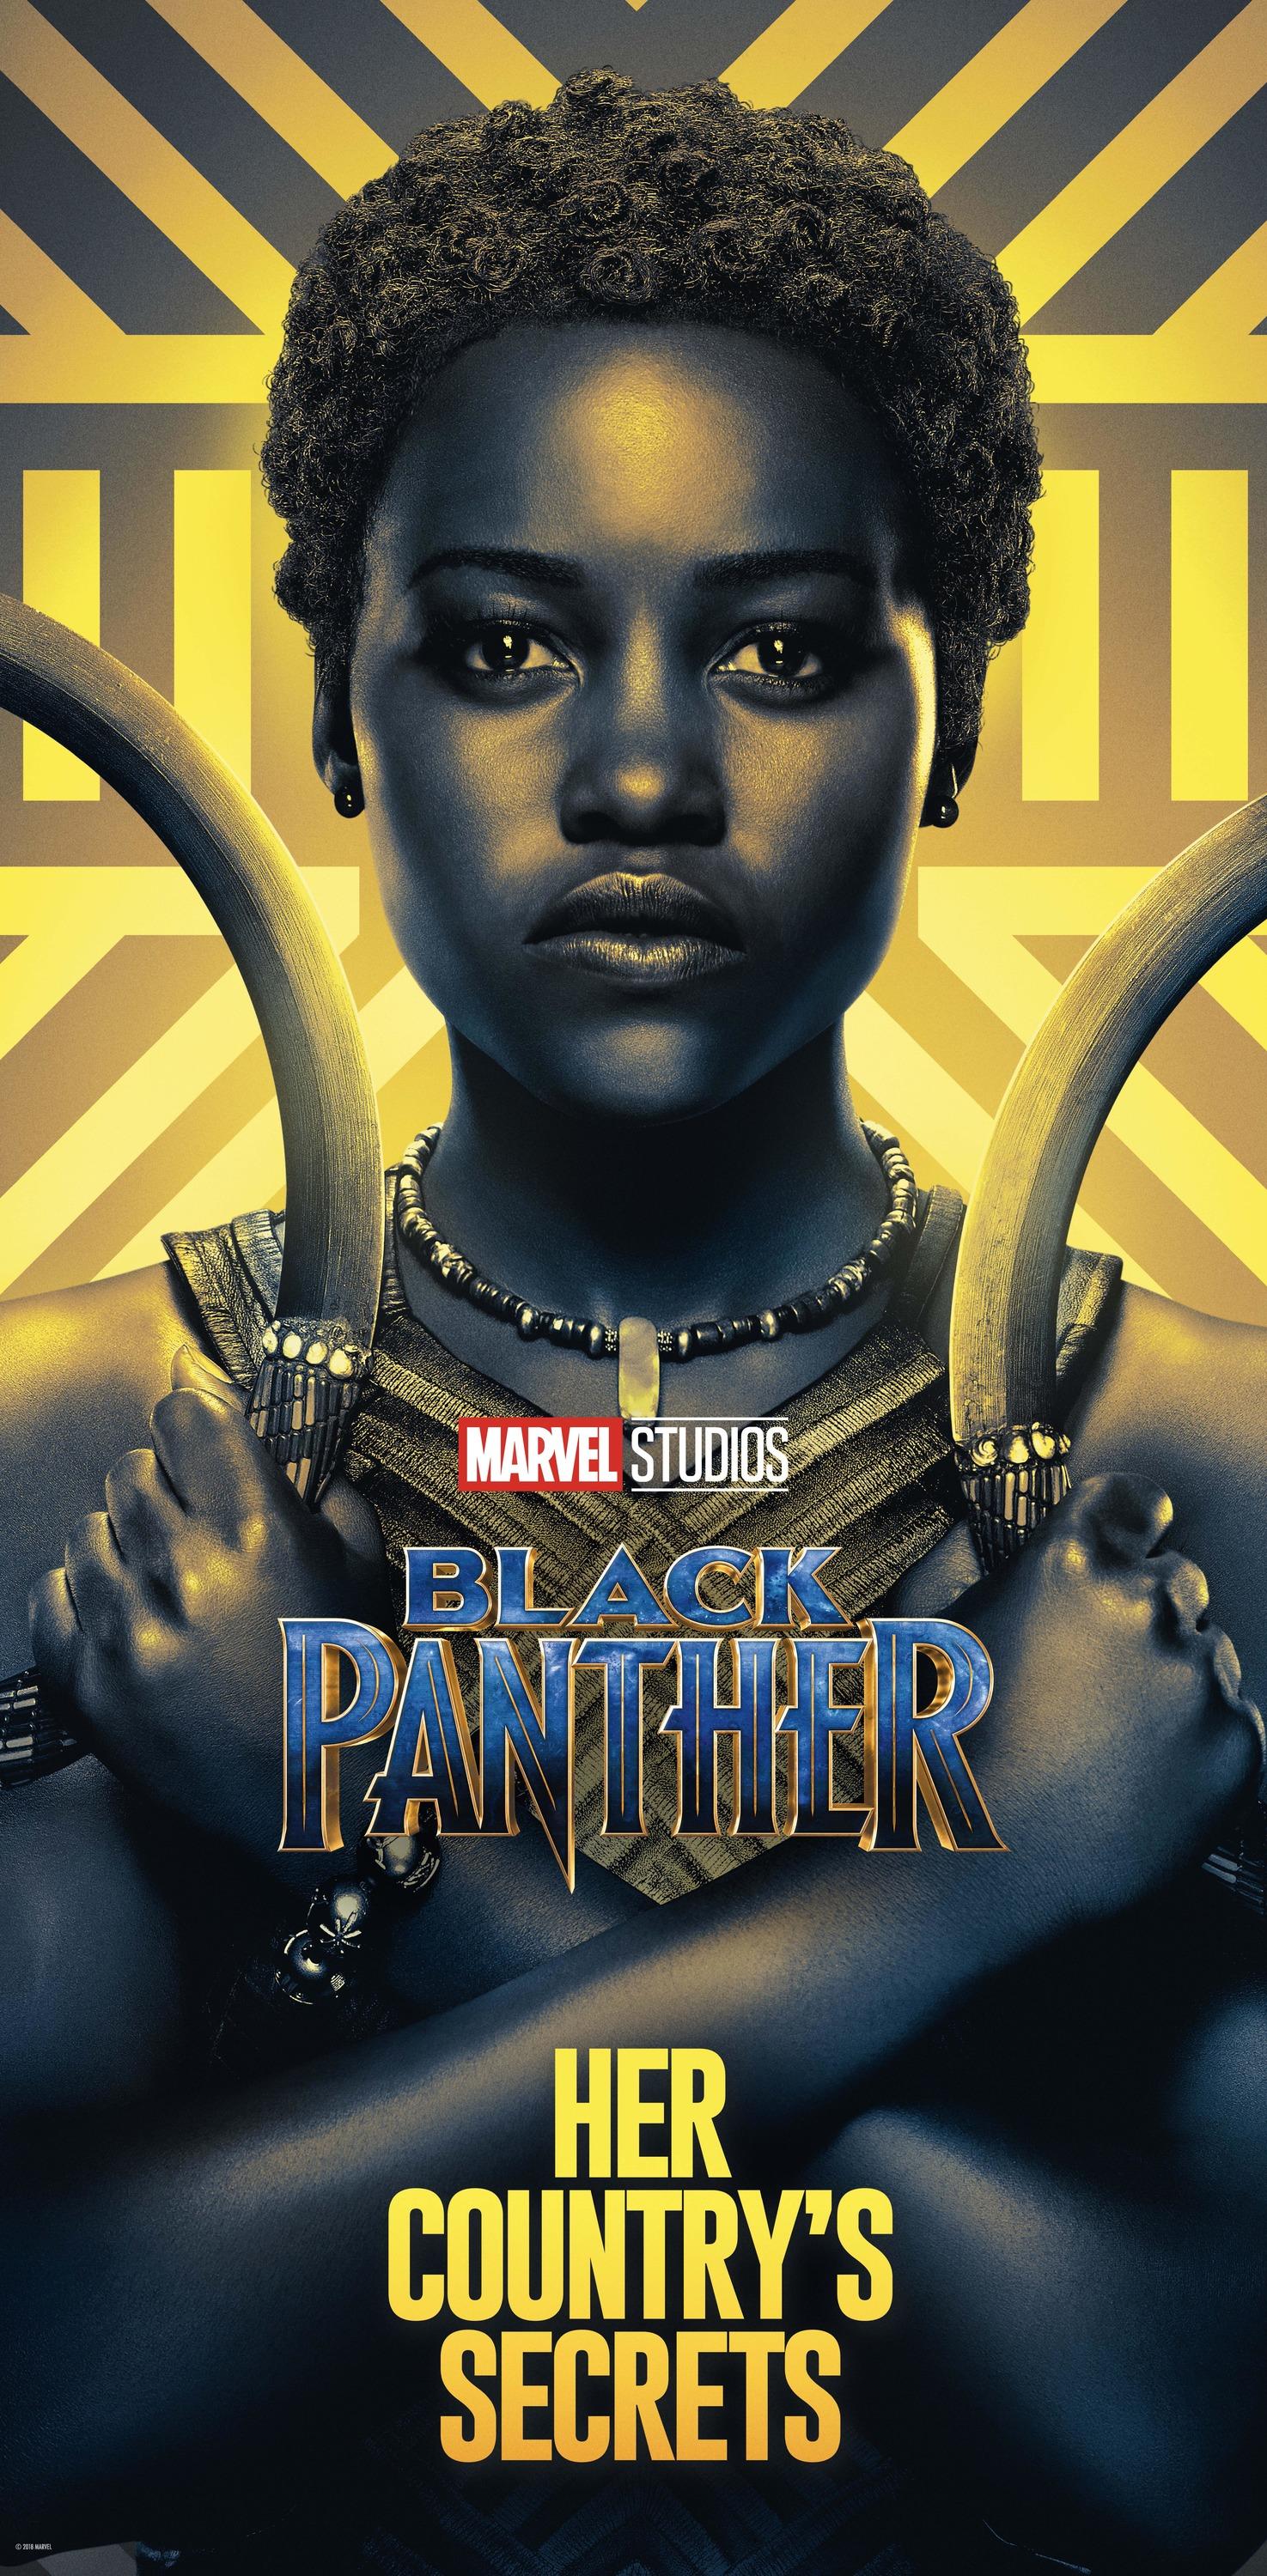 Постер фильма Черная Пантера | Black Panther